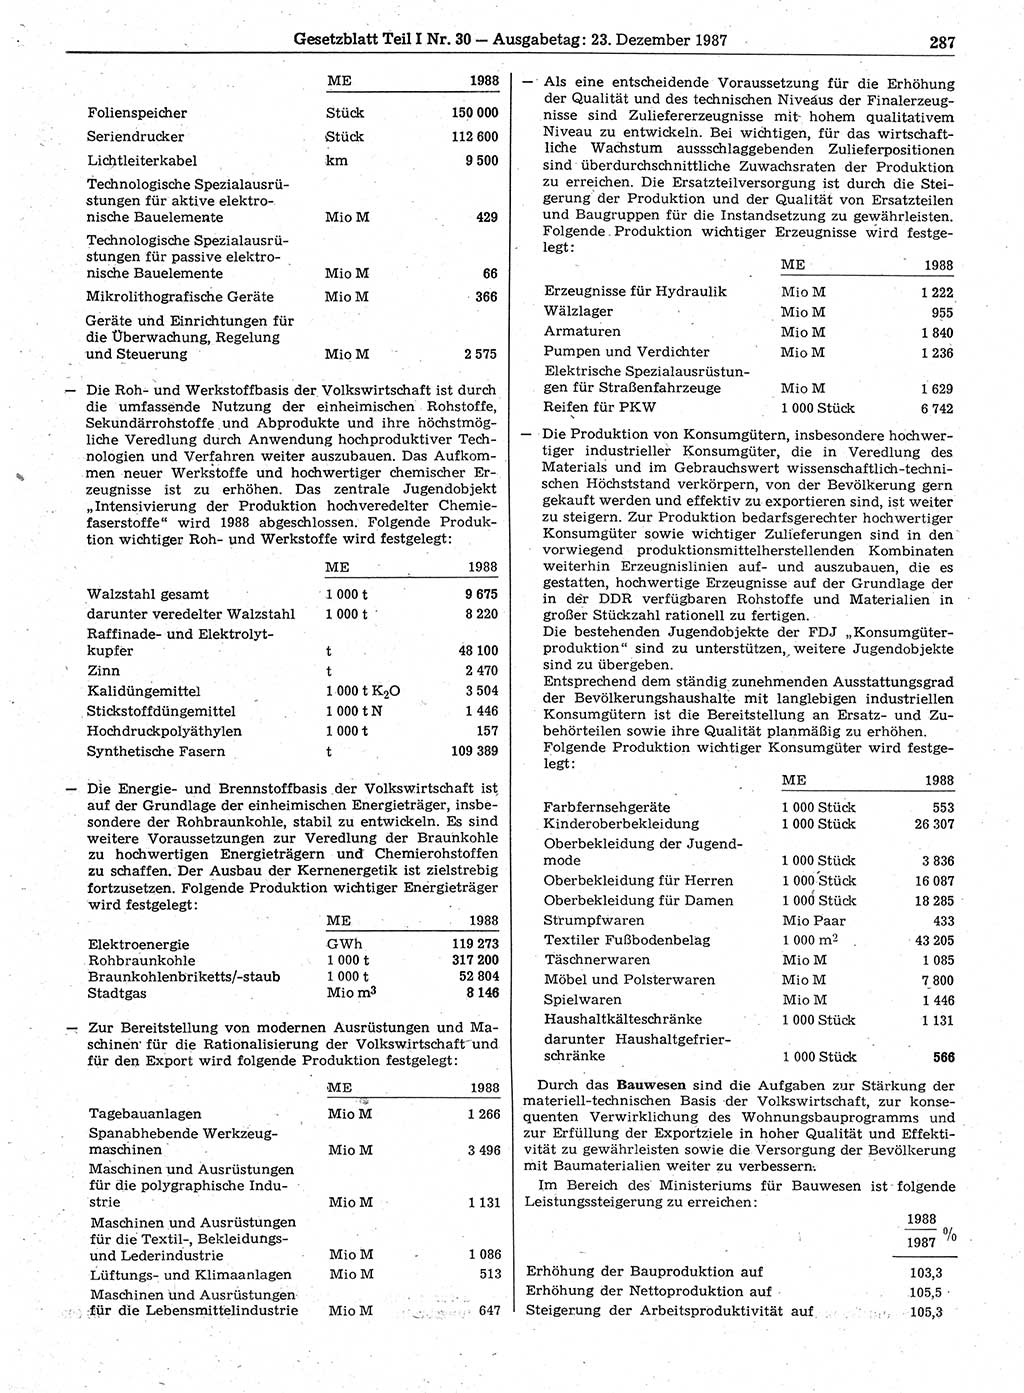 Gesetzblatt (GBl.) der Deutschen Demokratischen Republik (DDR) Teil Ⅰ 1987, Seite 287 (GBl. DDR Ⅰ 1987, S. 287)